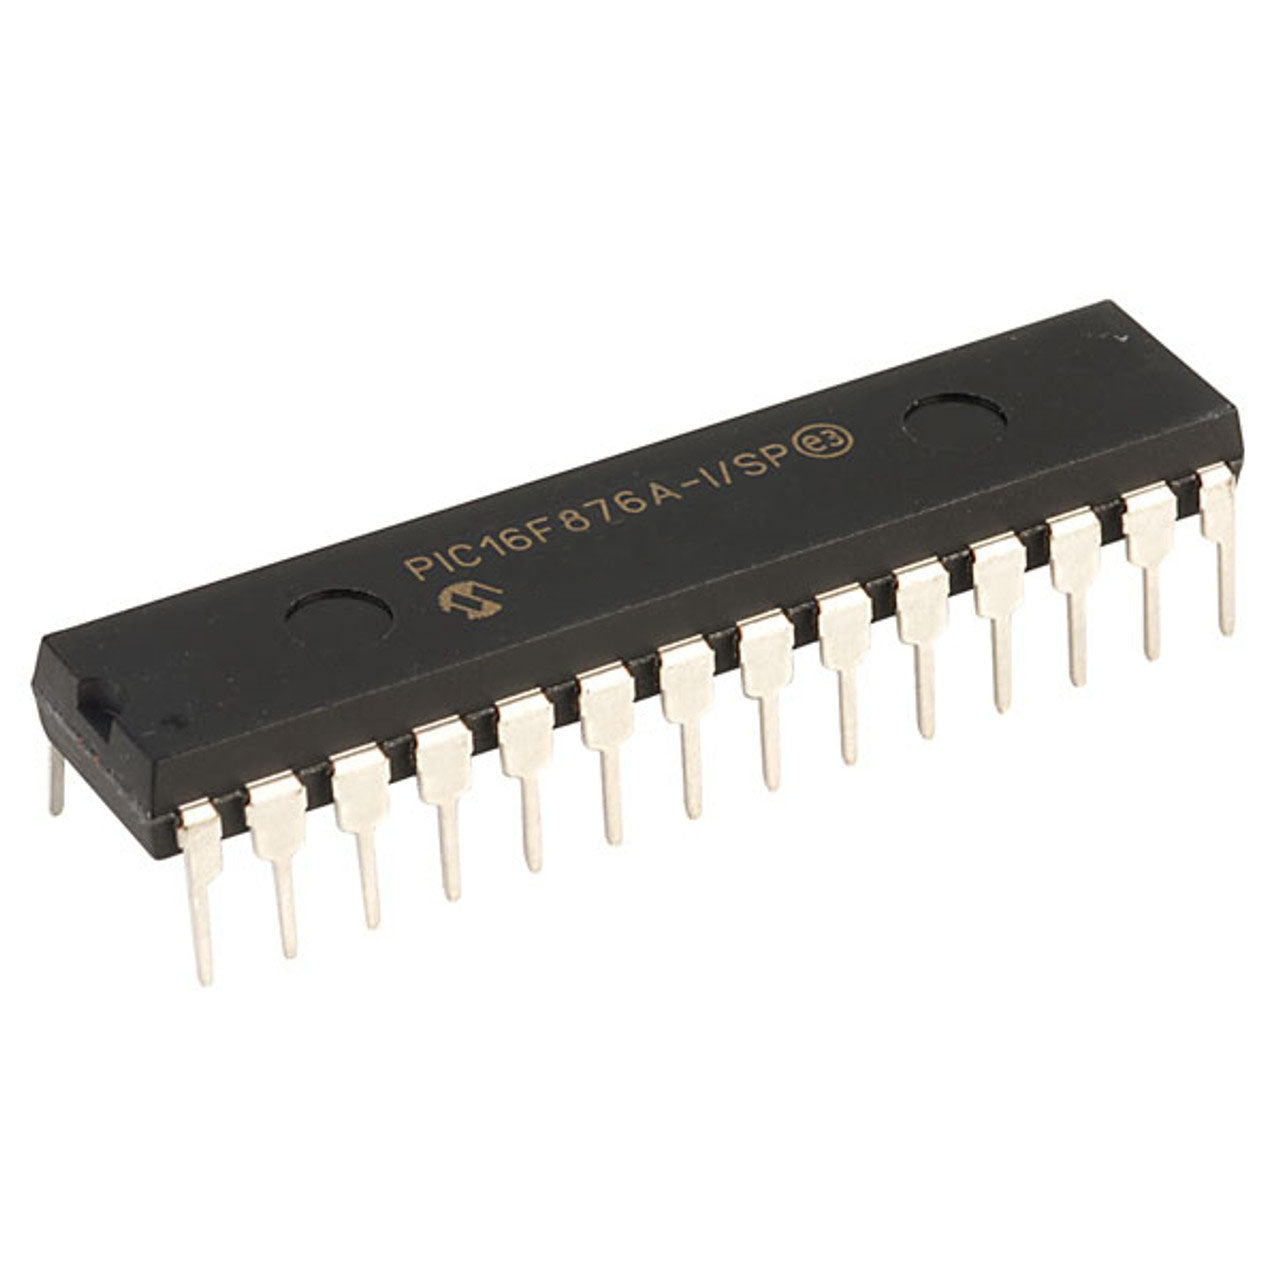 PIC16F876A Componente elettronico, circuito integrato, transistor, 28 contatti